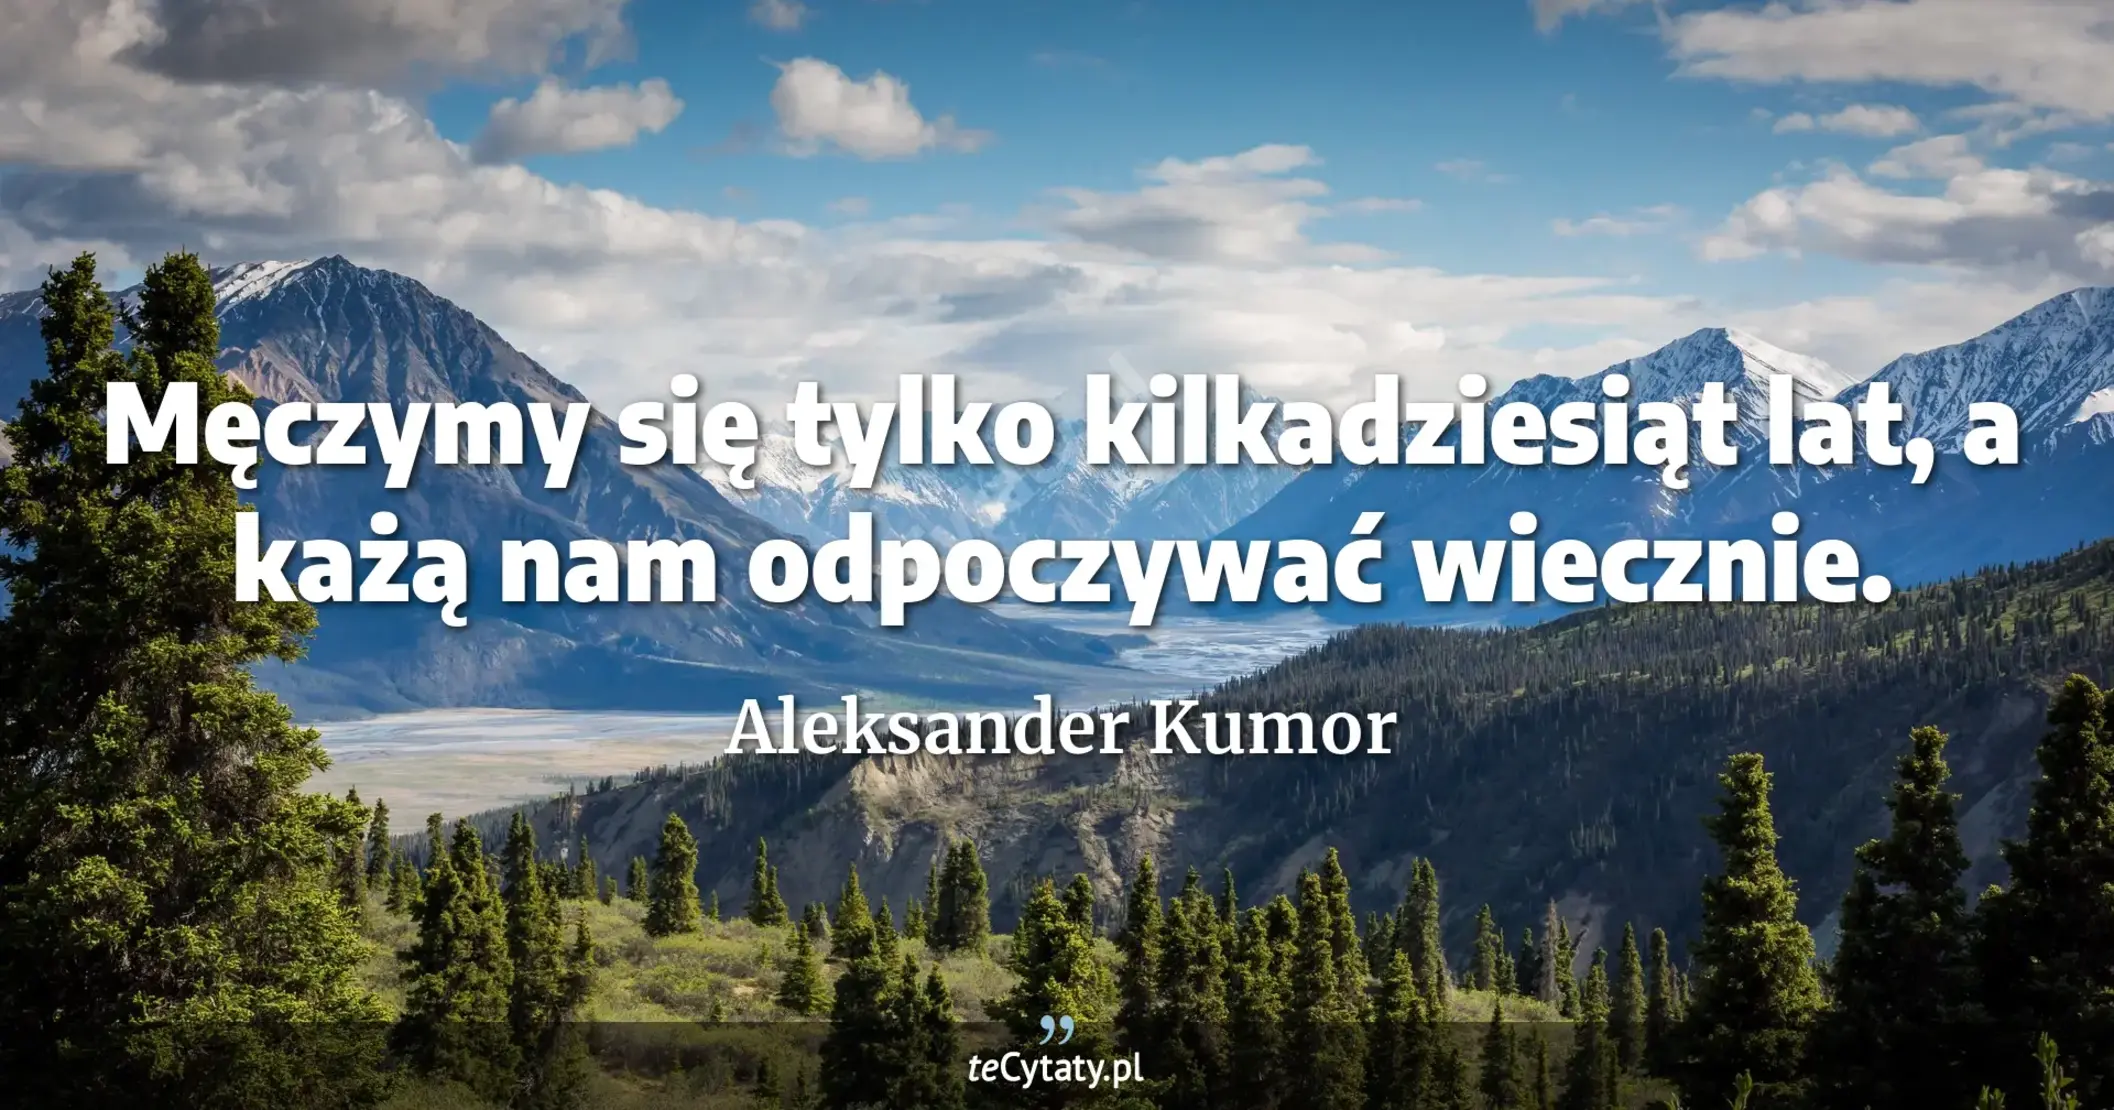 Męczymy się tylko kilkadziesiąt lat, a każą nam odpoczywać wiecznie. - Aleksander Kumor